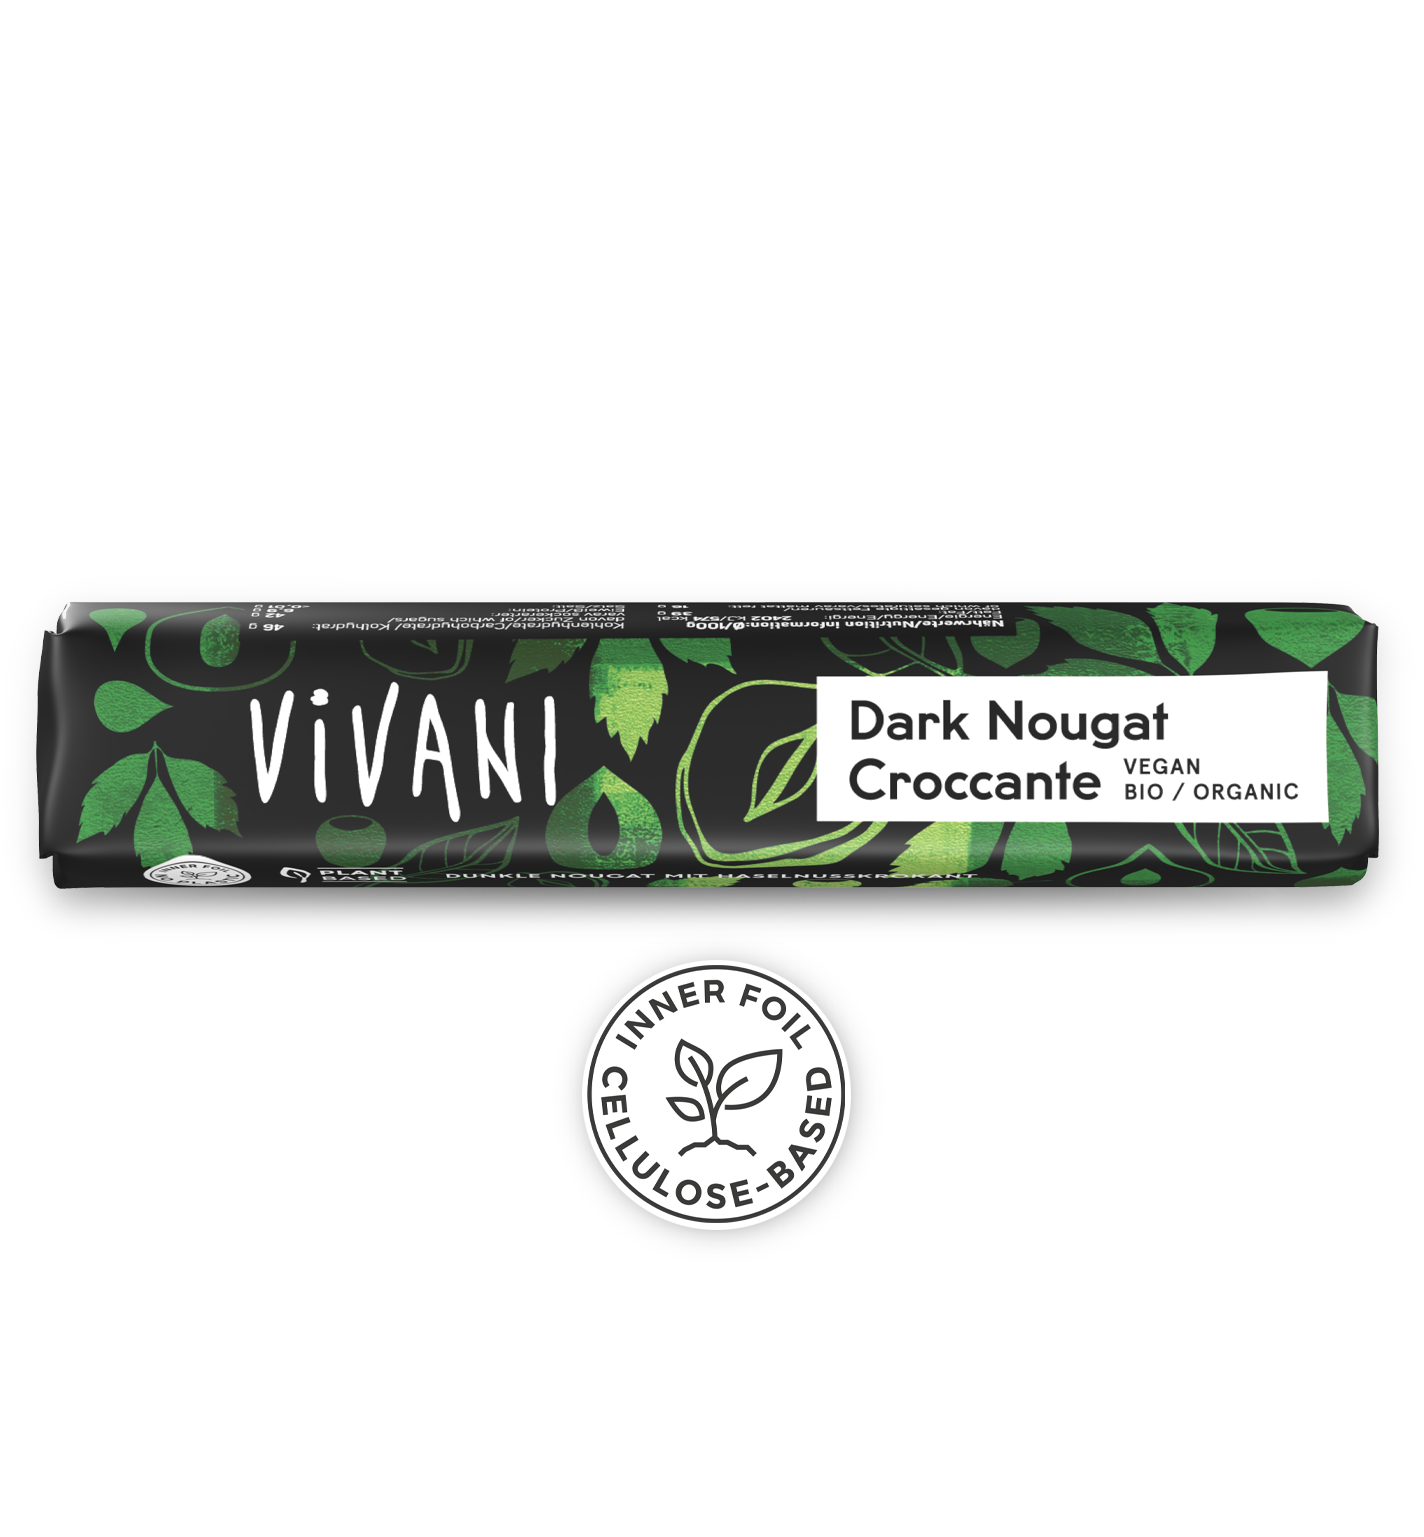 Barre au chocolat bio végétalien Dark Nougat Croccante de VIVANI, avec une forte teneur en noisettes et un croquant aux noisettes